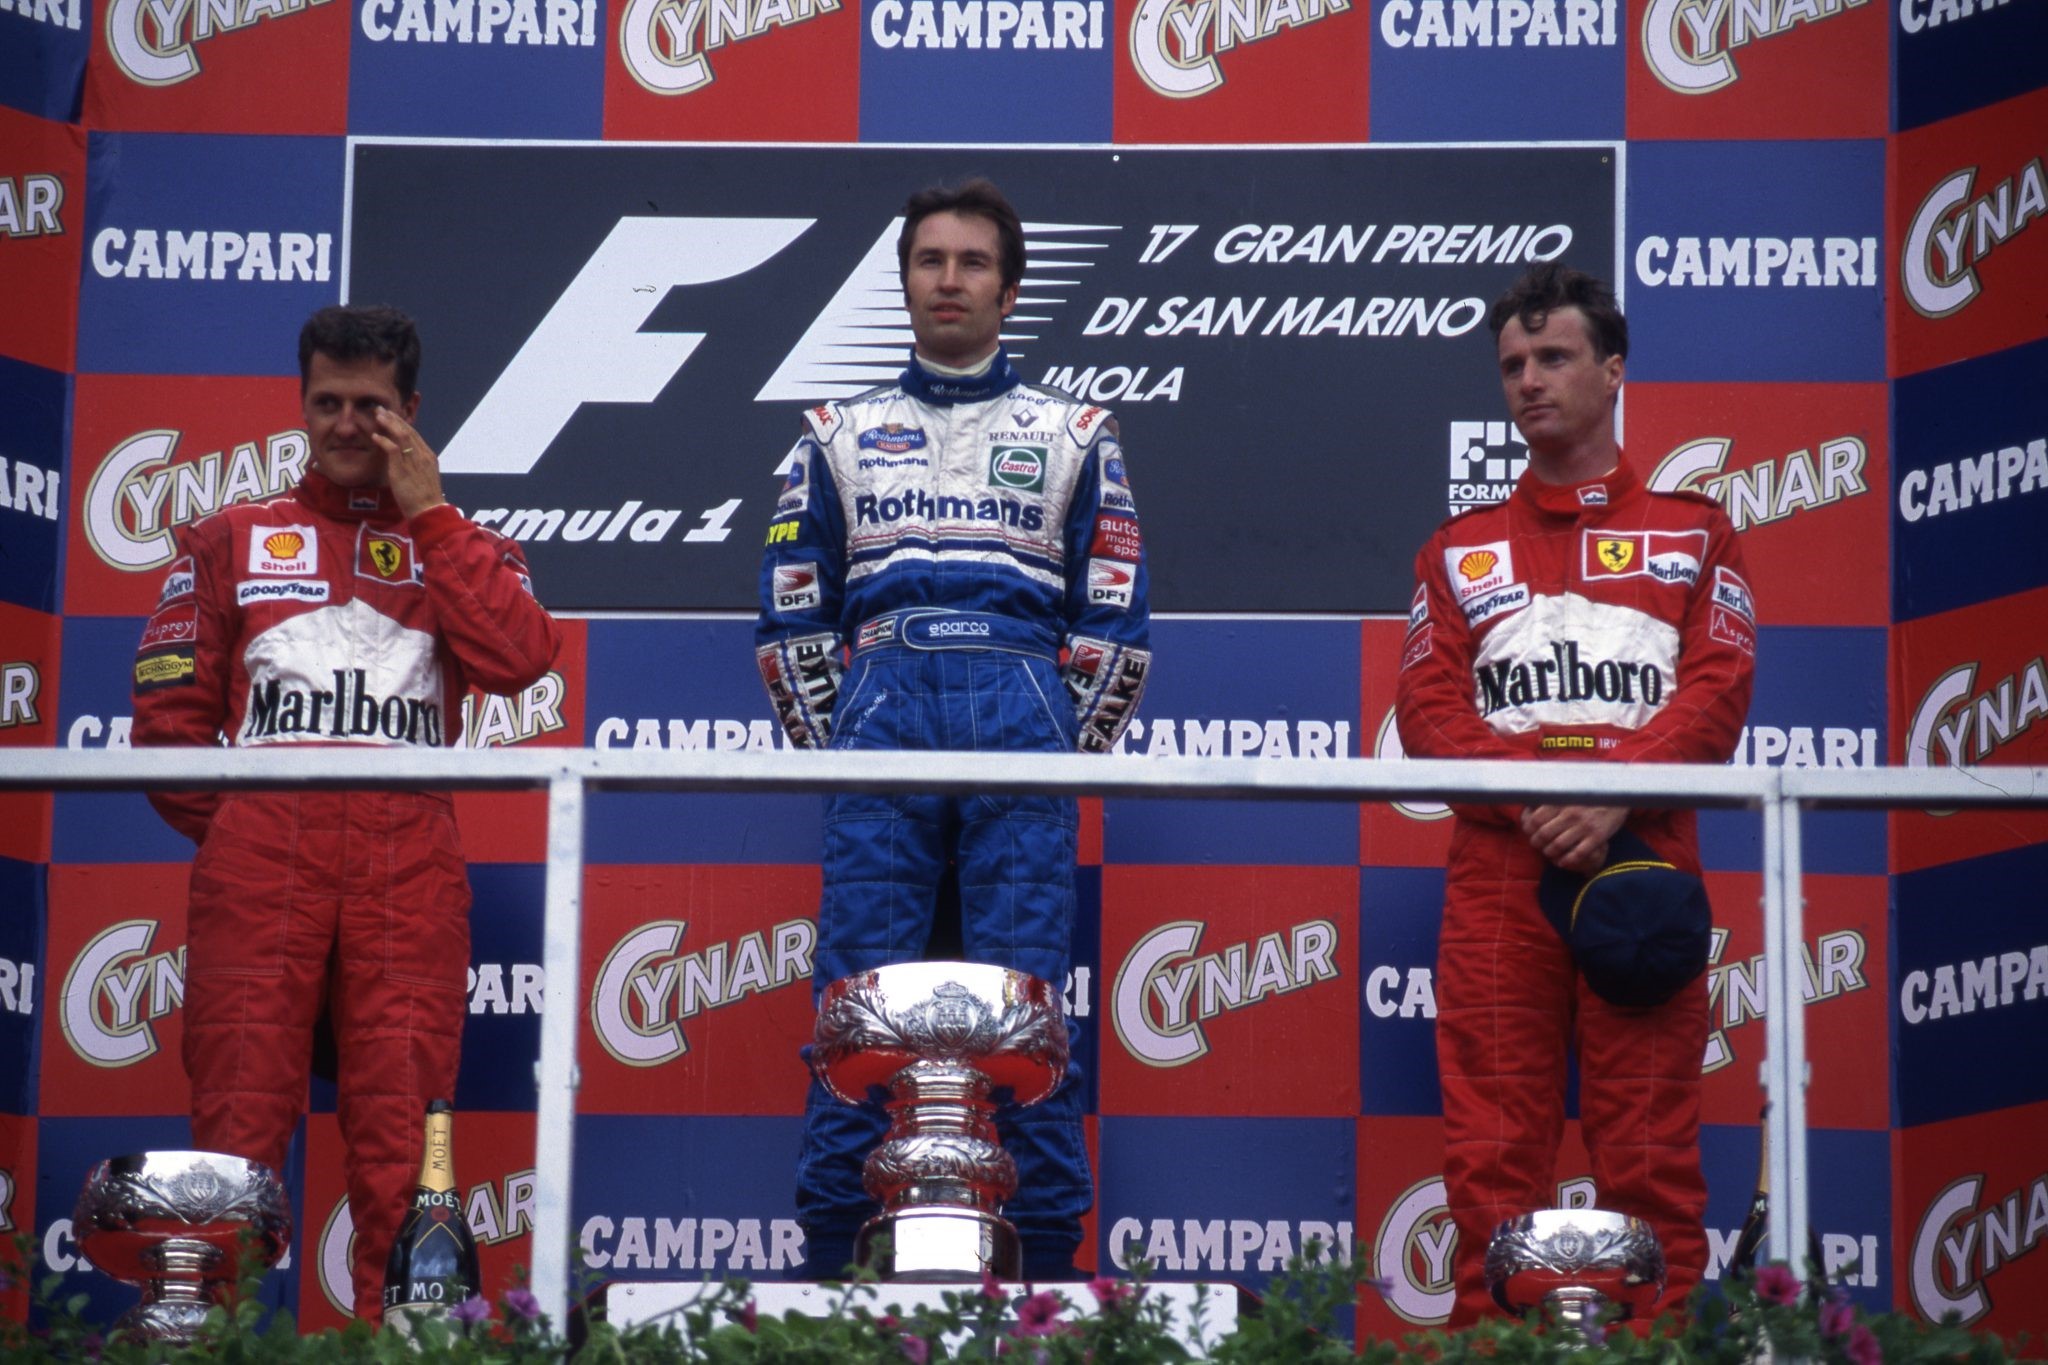 Michael Schumacher, Heinz-Harald Frentzen and Eddie Irvine on the podium at Imola.